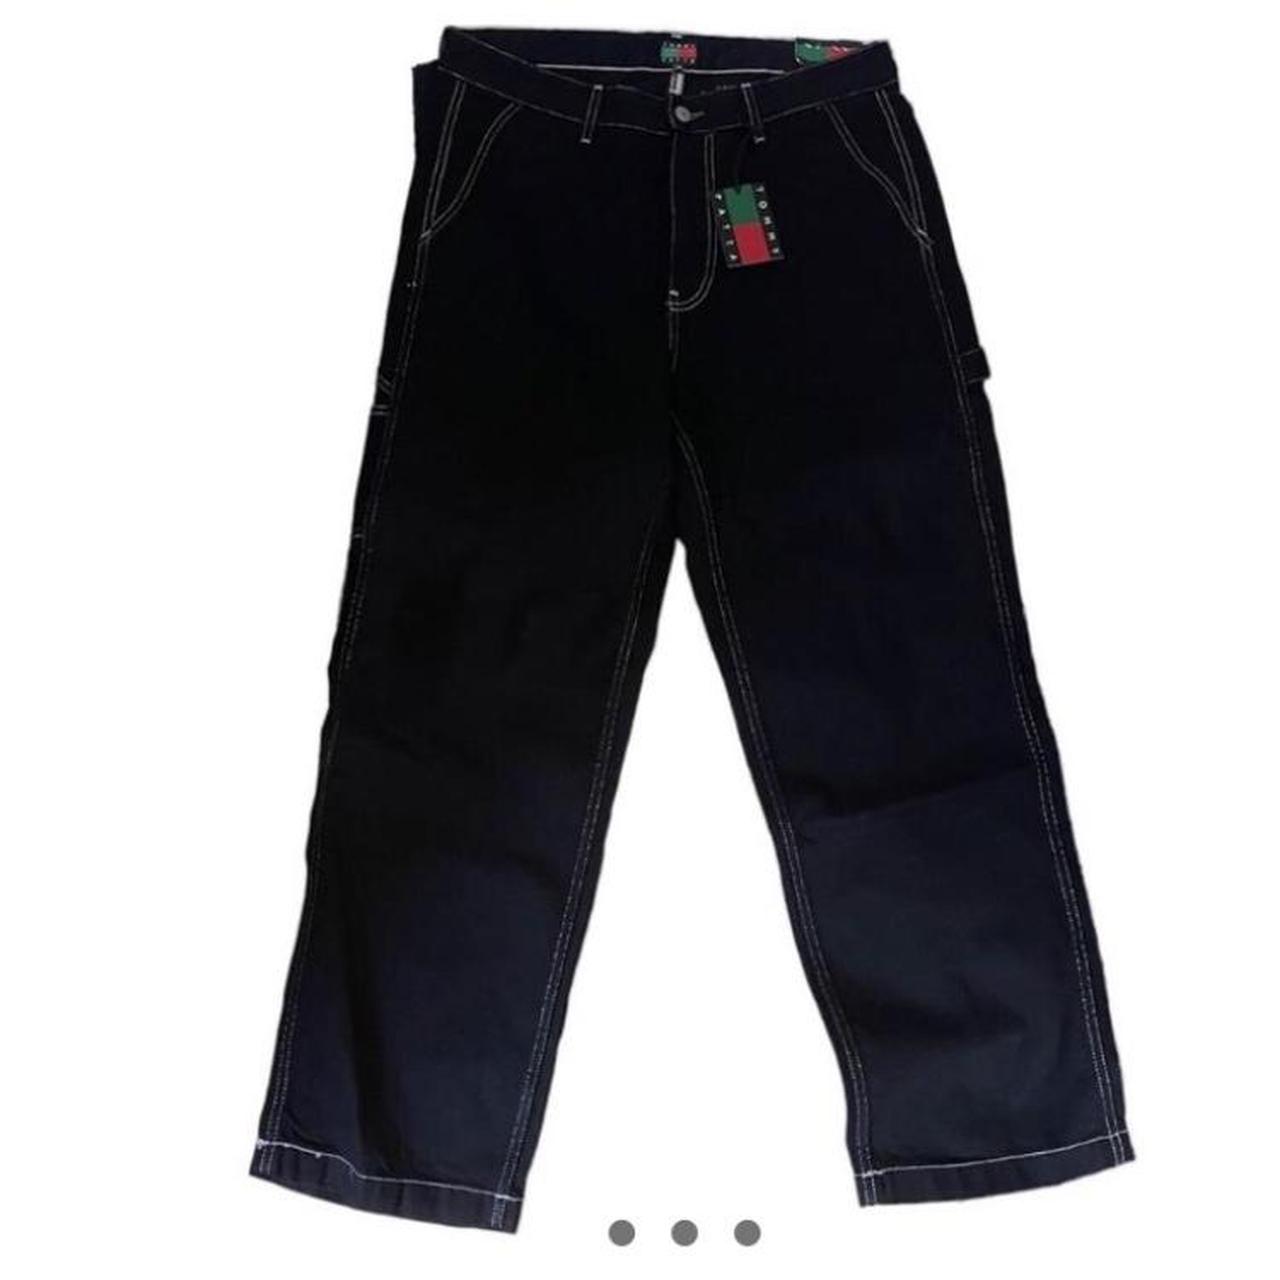 Patta x Tommy Hilfiger carpenter jeans Been worn a... - Depop